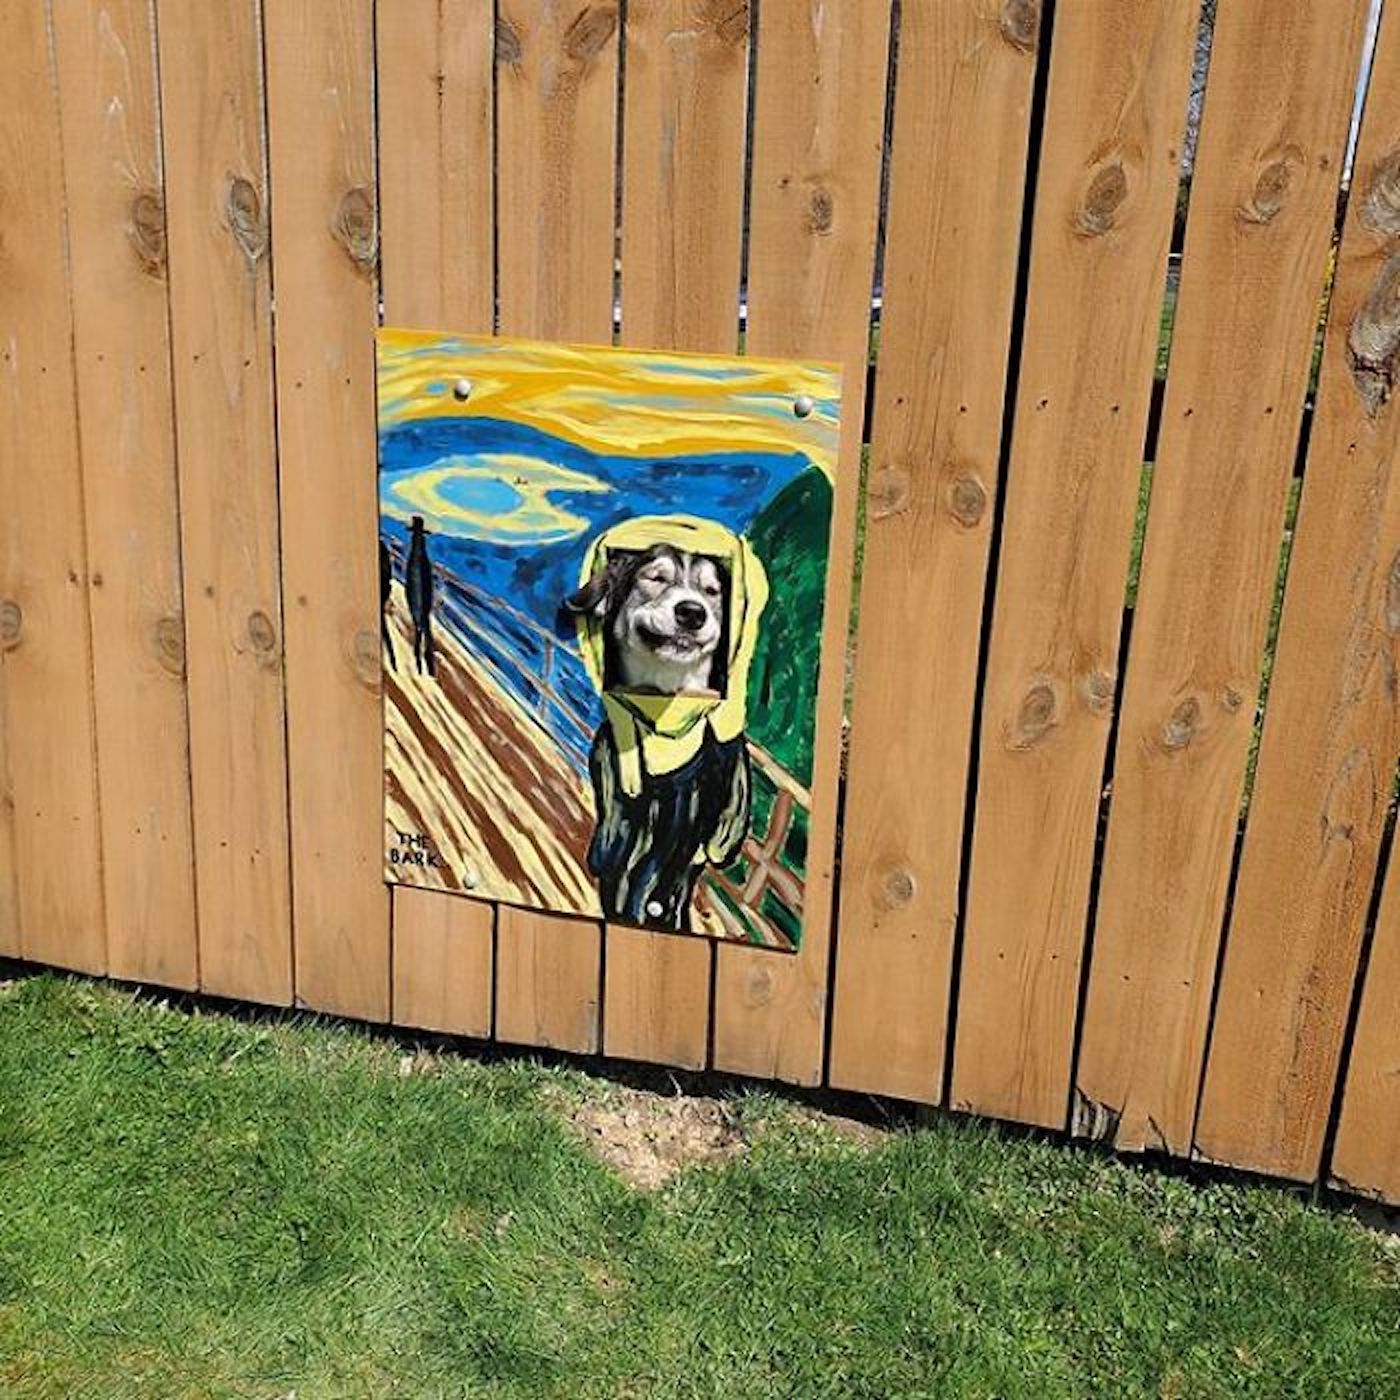 Pour amuser la voisinage, cette famille décore le trou de sa clôture avec créativité